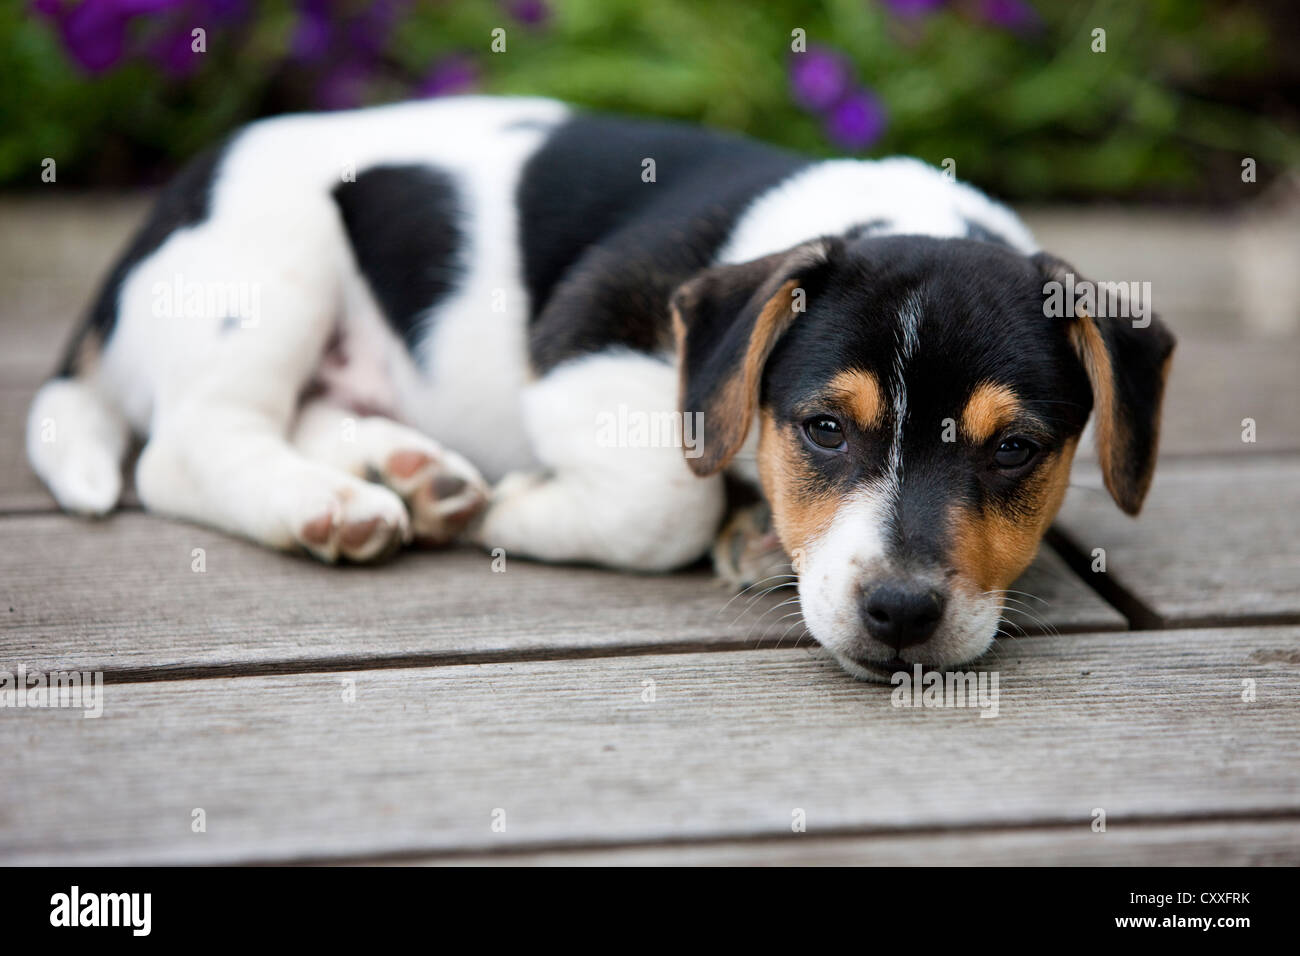 Jack Russell Terrier, chiot couché sur un plancher en bois, nord de l'Europe, Tyrol, Autriche Banque D'Images